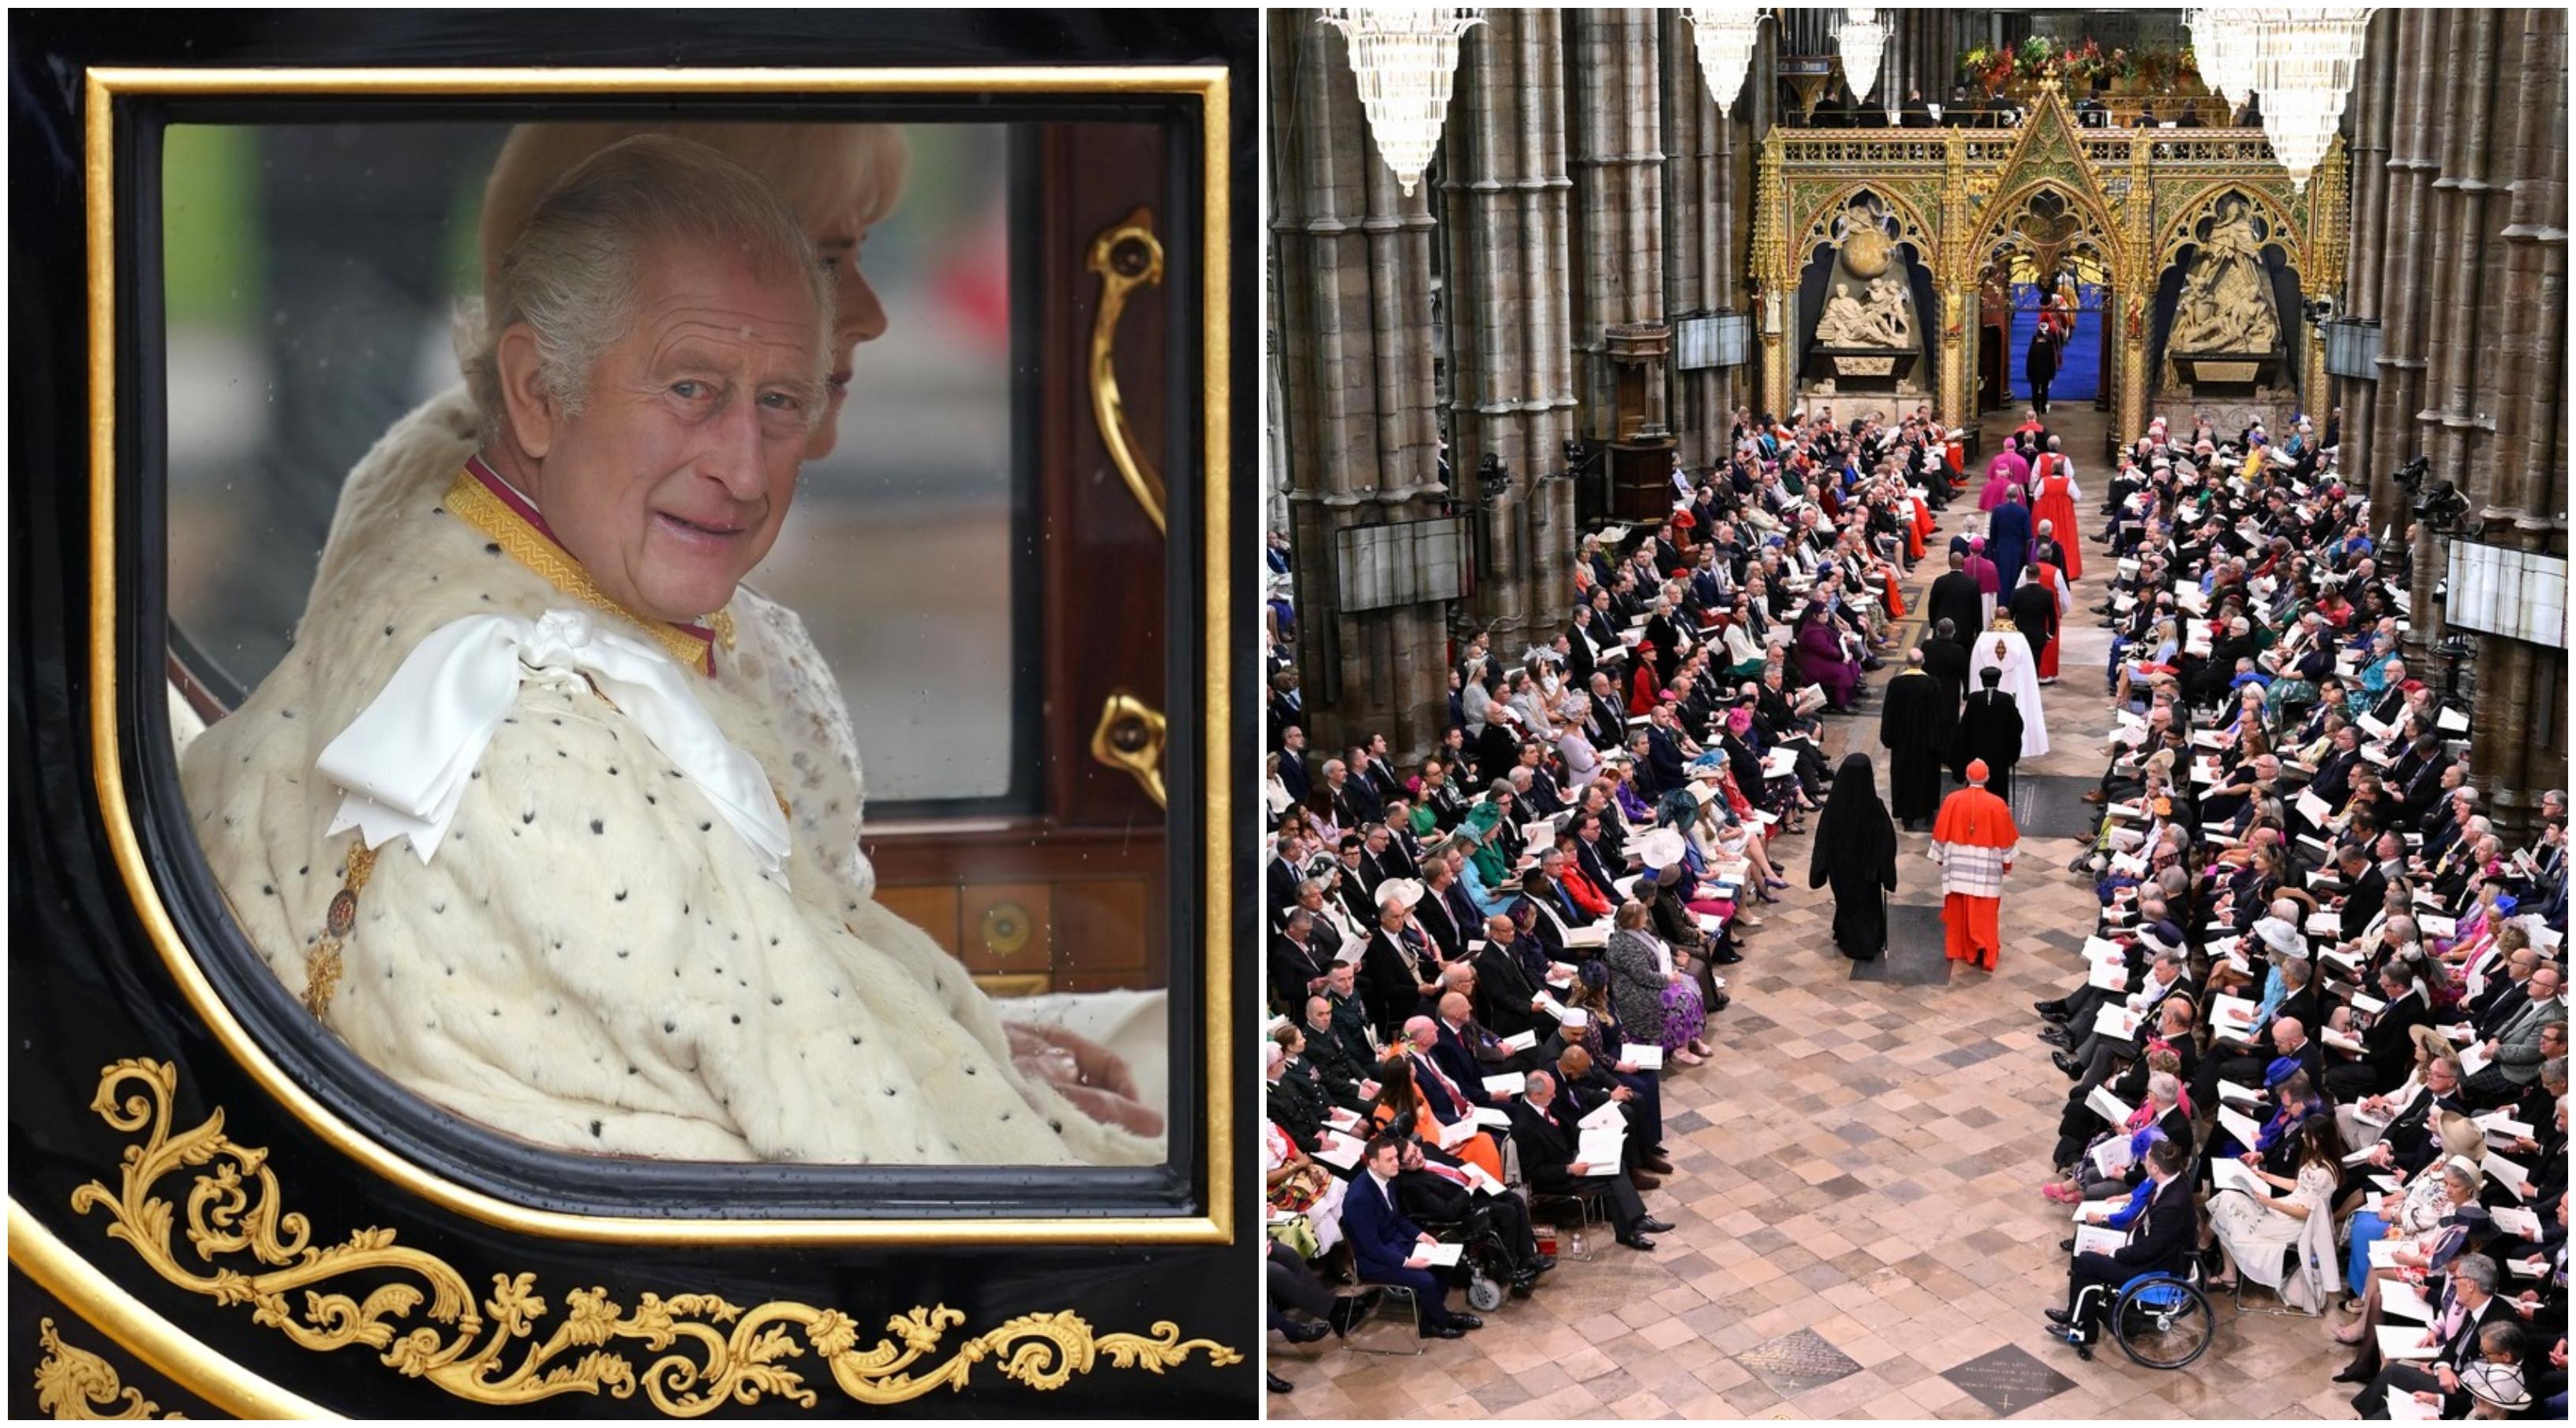 Regele Charles al III-lea, încoronat azi la Londra. Ceremonia istorică este transmisă într-o ediţie specială Observator, pe Antena 1